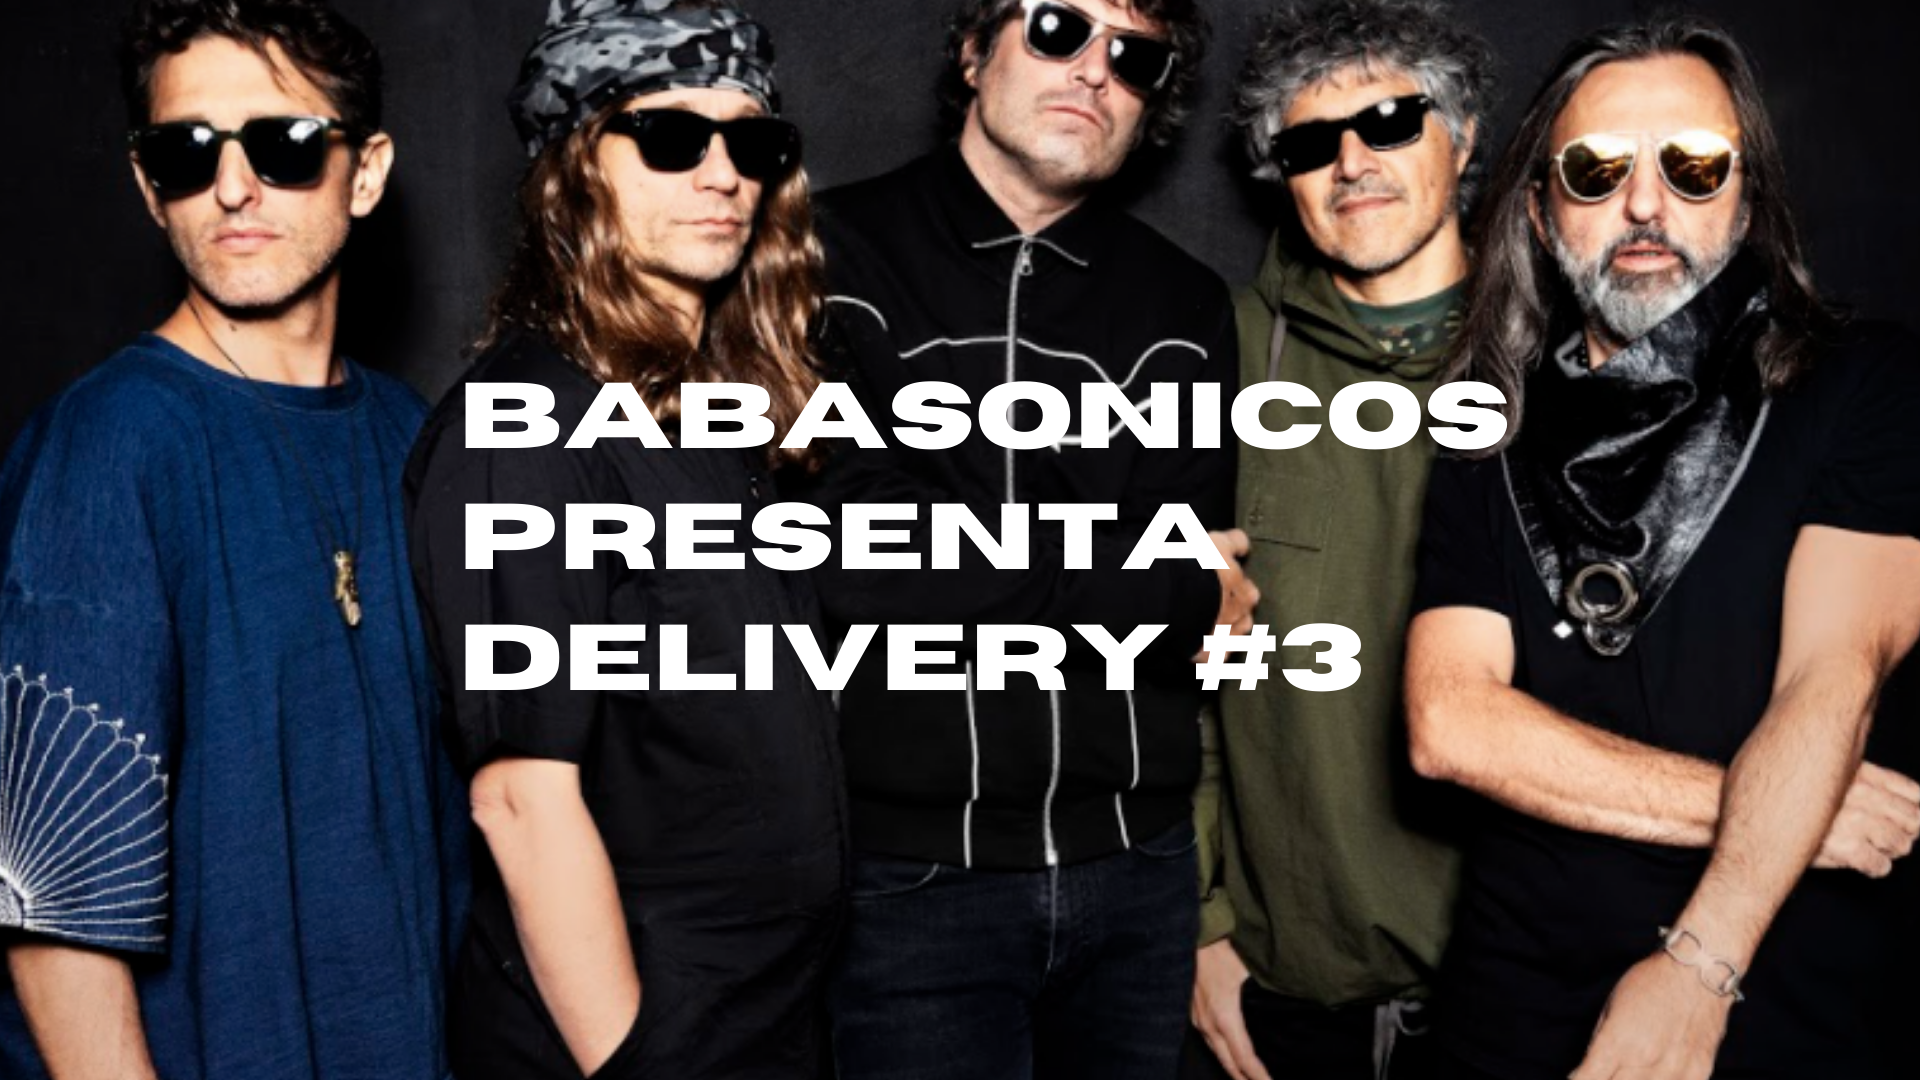 Babasonicos presenta Delivery #3